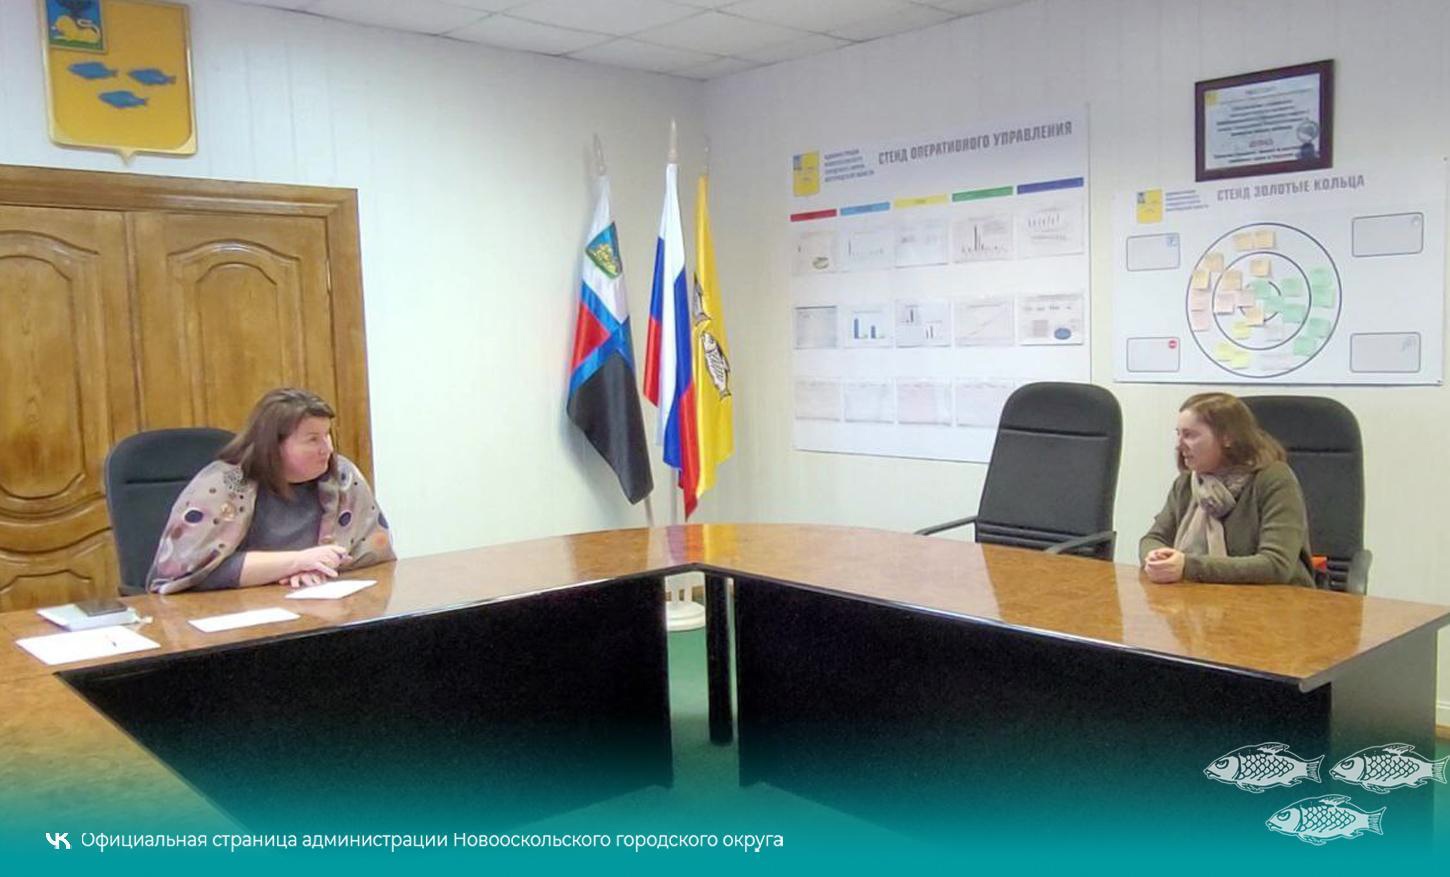 В здании администрации Новооскольского городского округа состоялся еженедельный приём граждан по личным вопросам.